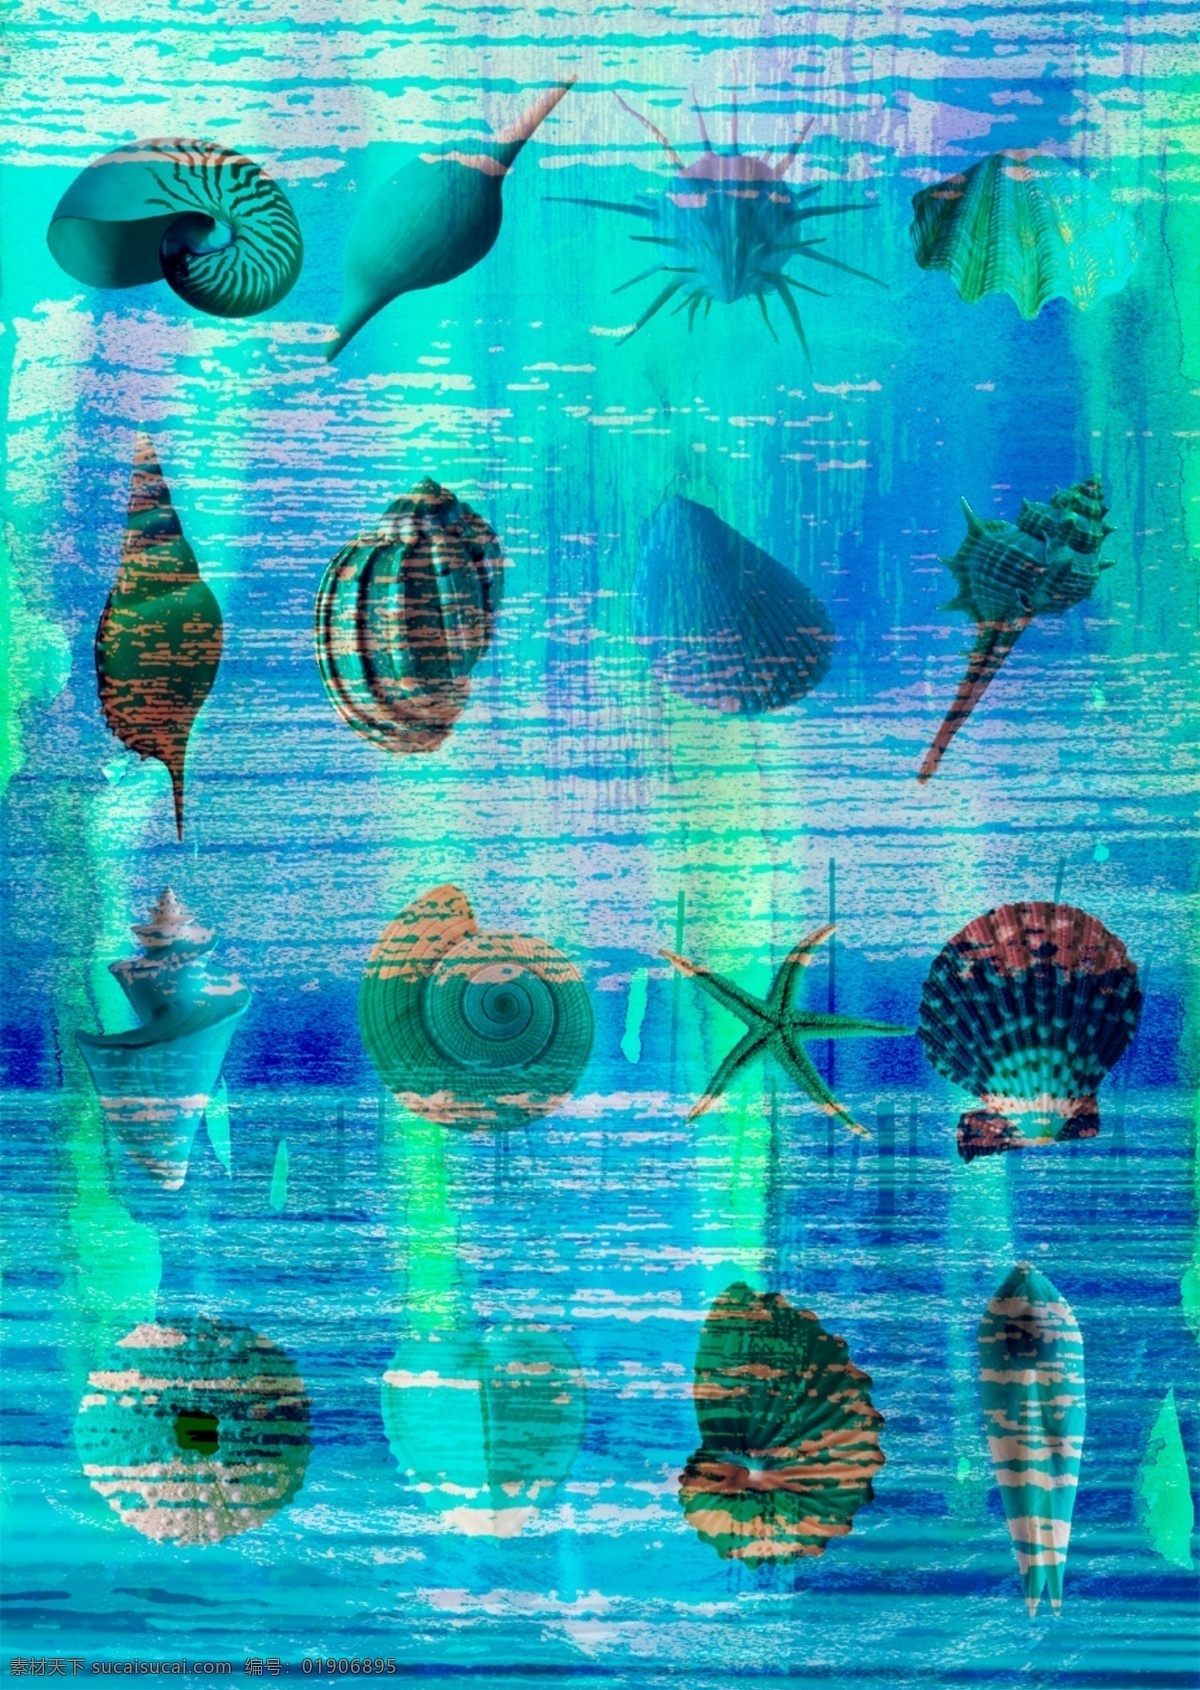 美国 视觉 设计师 作品 源文件 海洋 生命体 分层 贝壳 广告创意 海螺 海马 海星 幻想 回忆 科幻背景 蓝色海洋背景 收藏者 海带海草背景 记忆印象 psd源文件